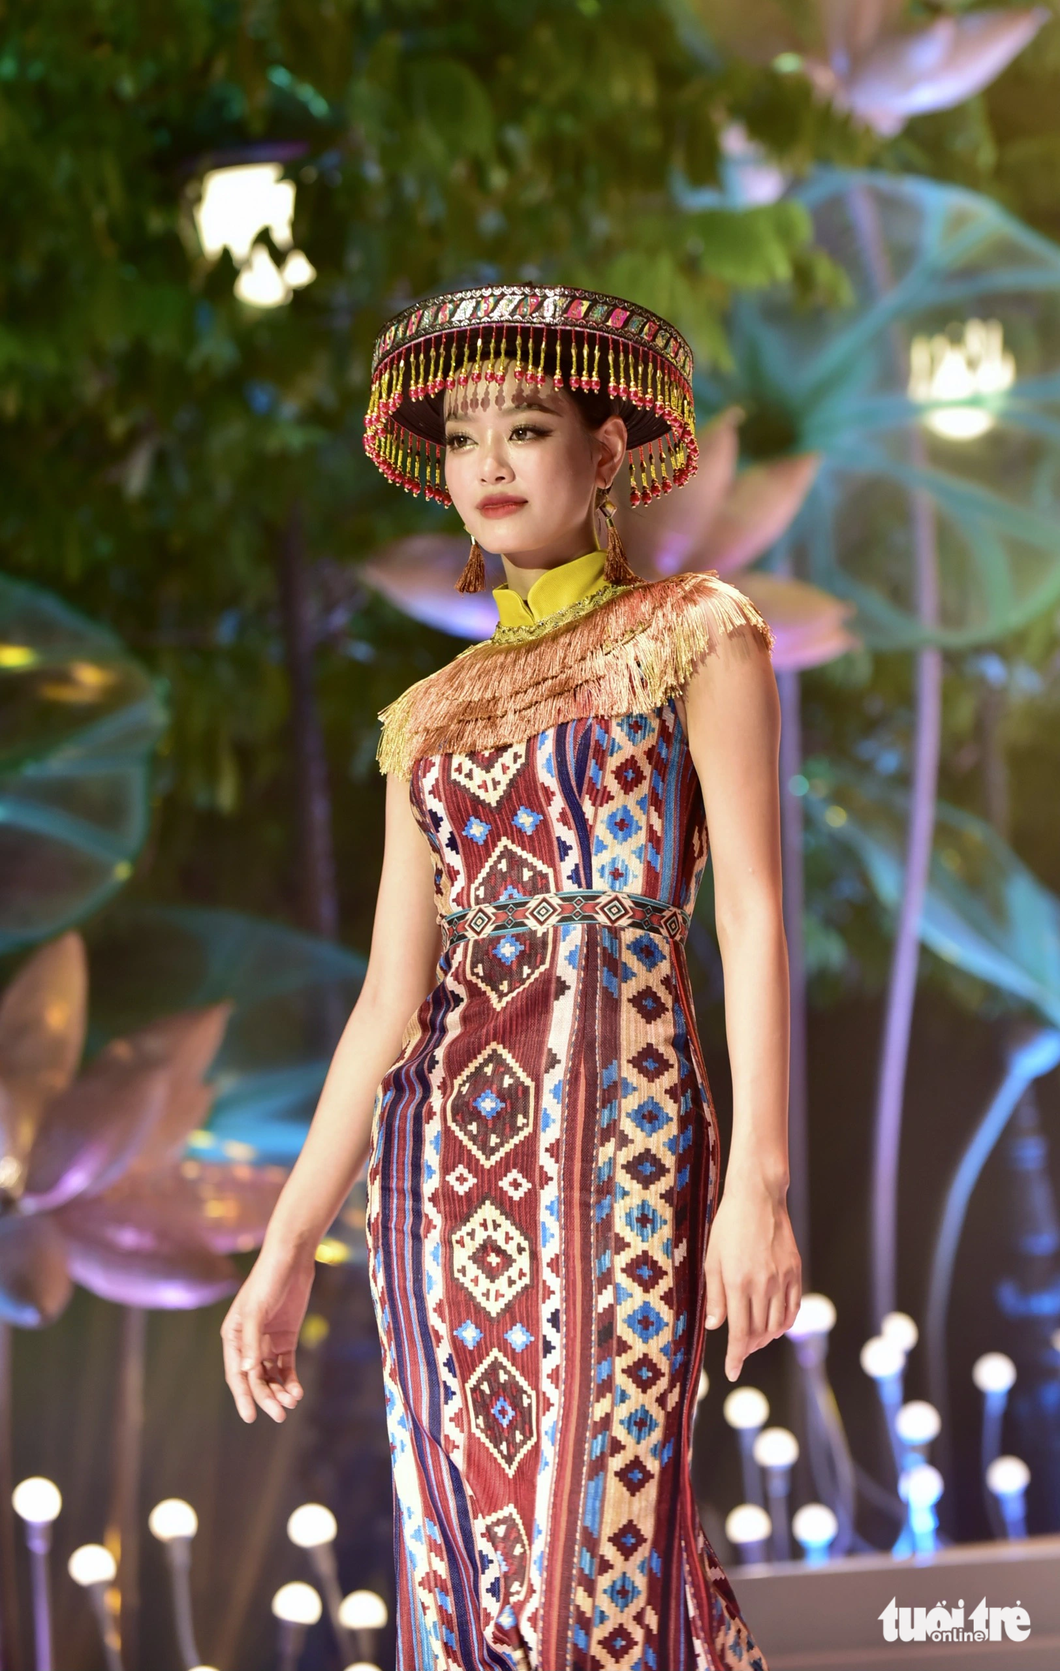 Á hậu Bùi Khánh Linh trong trang phục thổ cẩm - Ảnh: T.T.D.